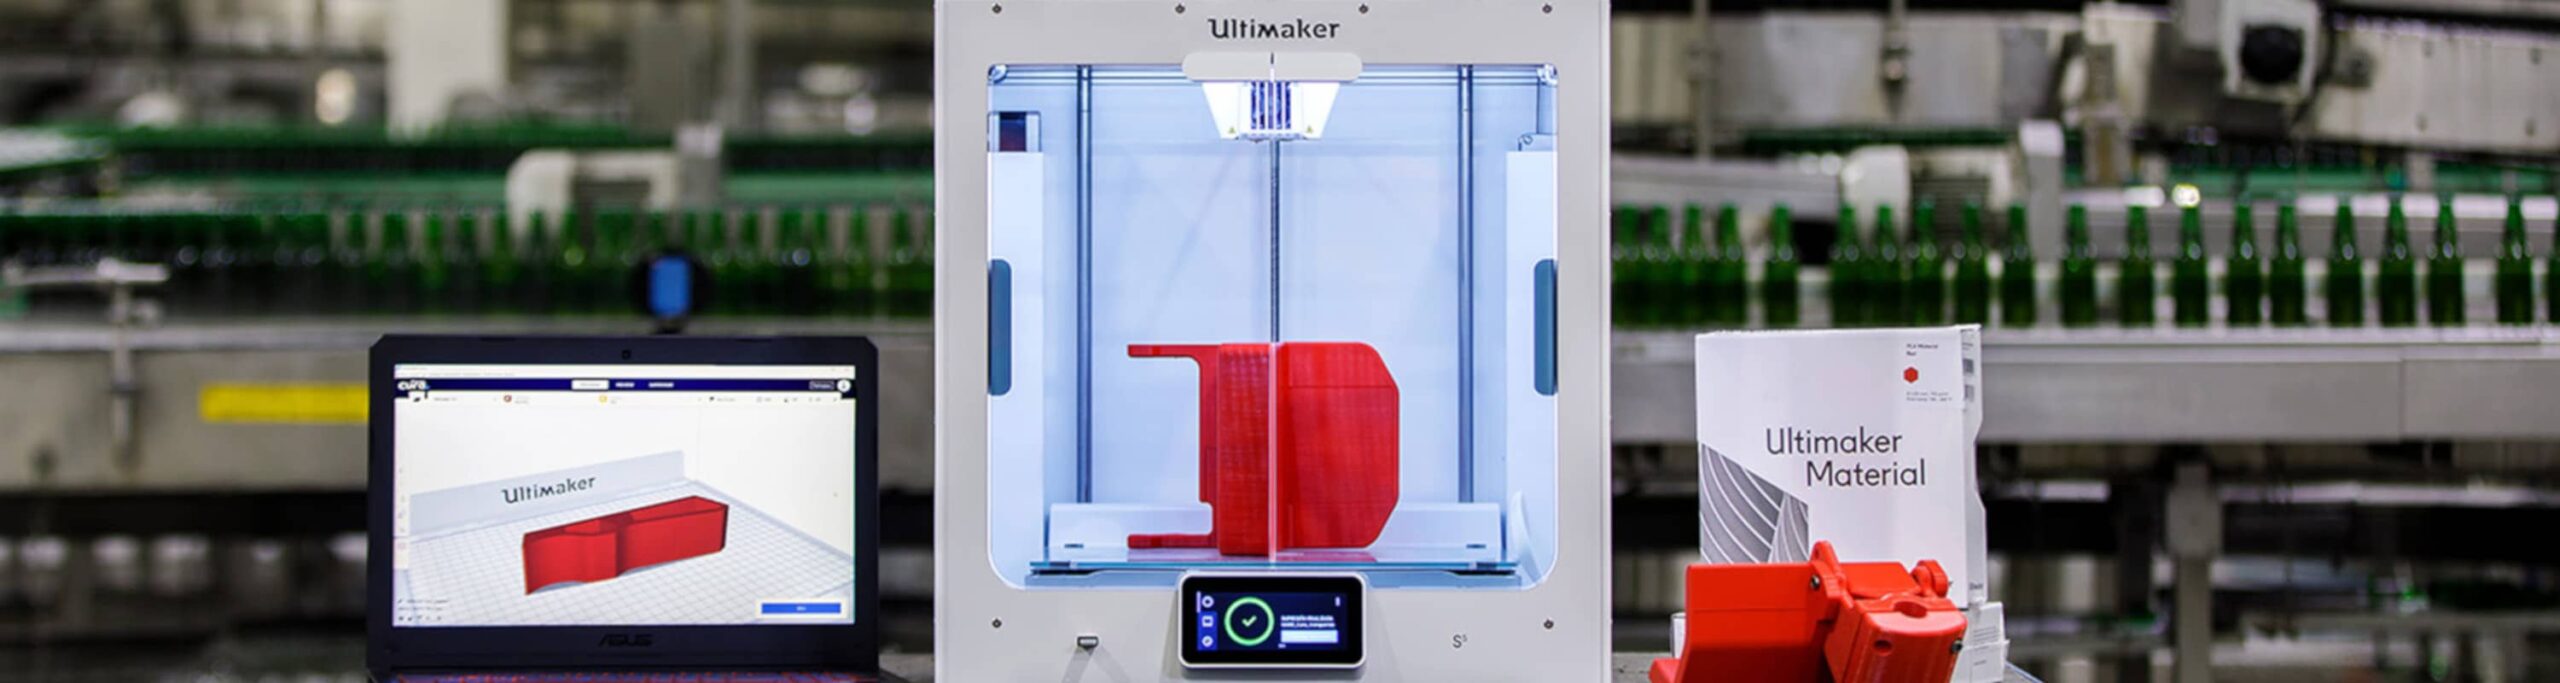 Heineken: Održanje kontinuiteta proizvodnje primenom 3D štampe